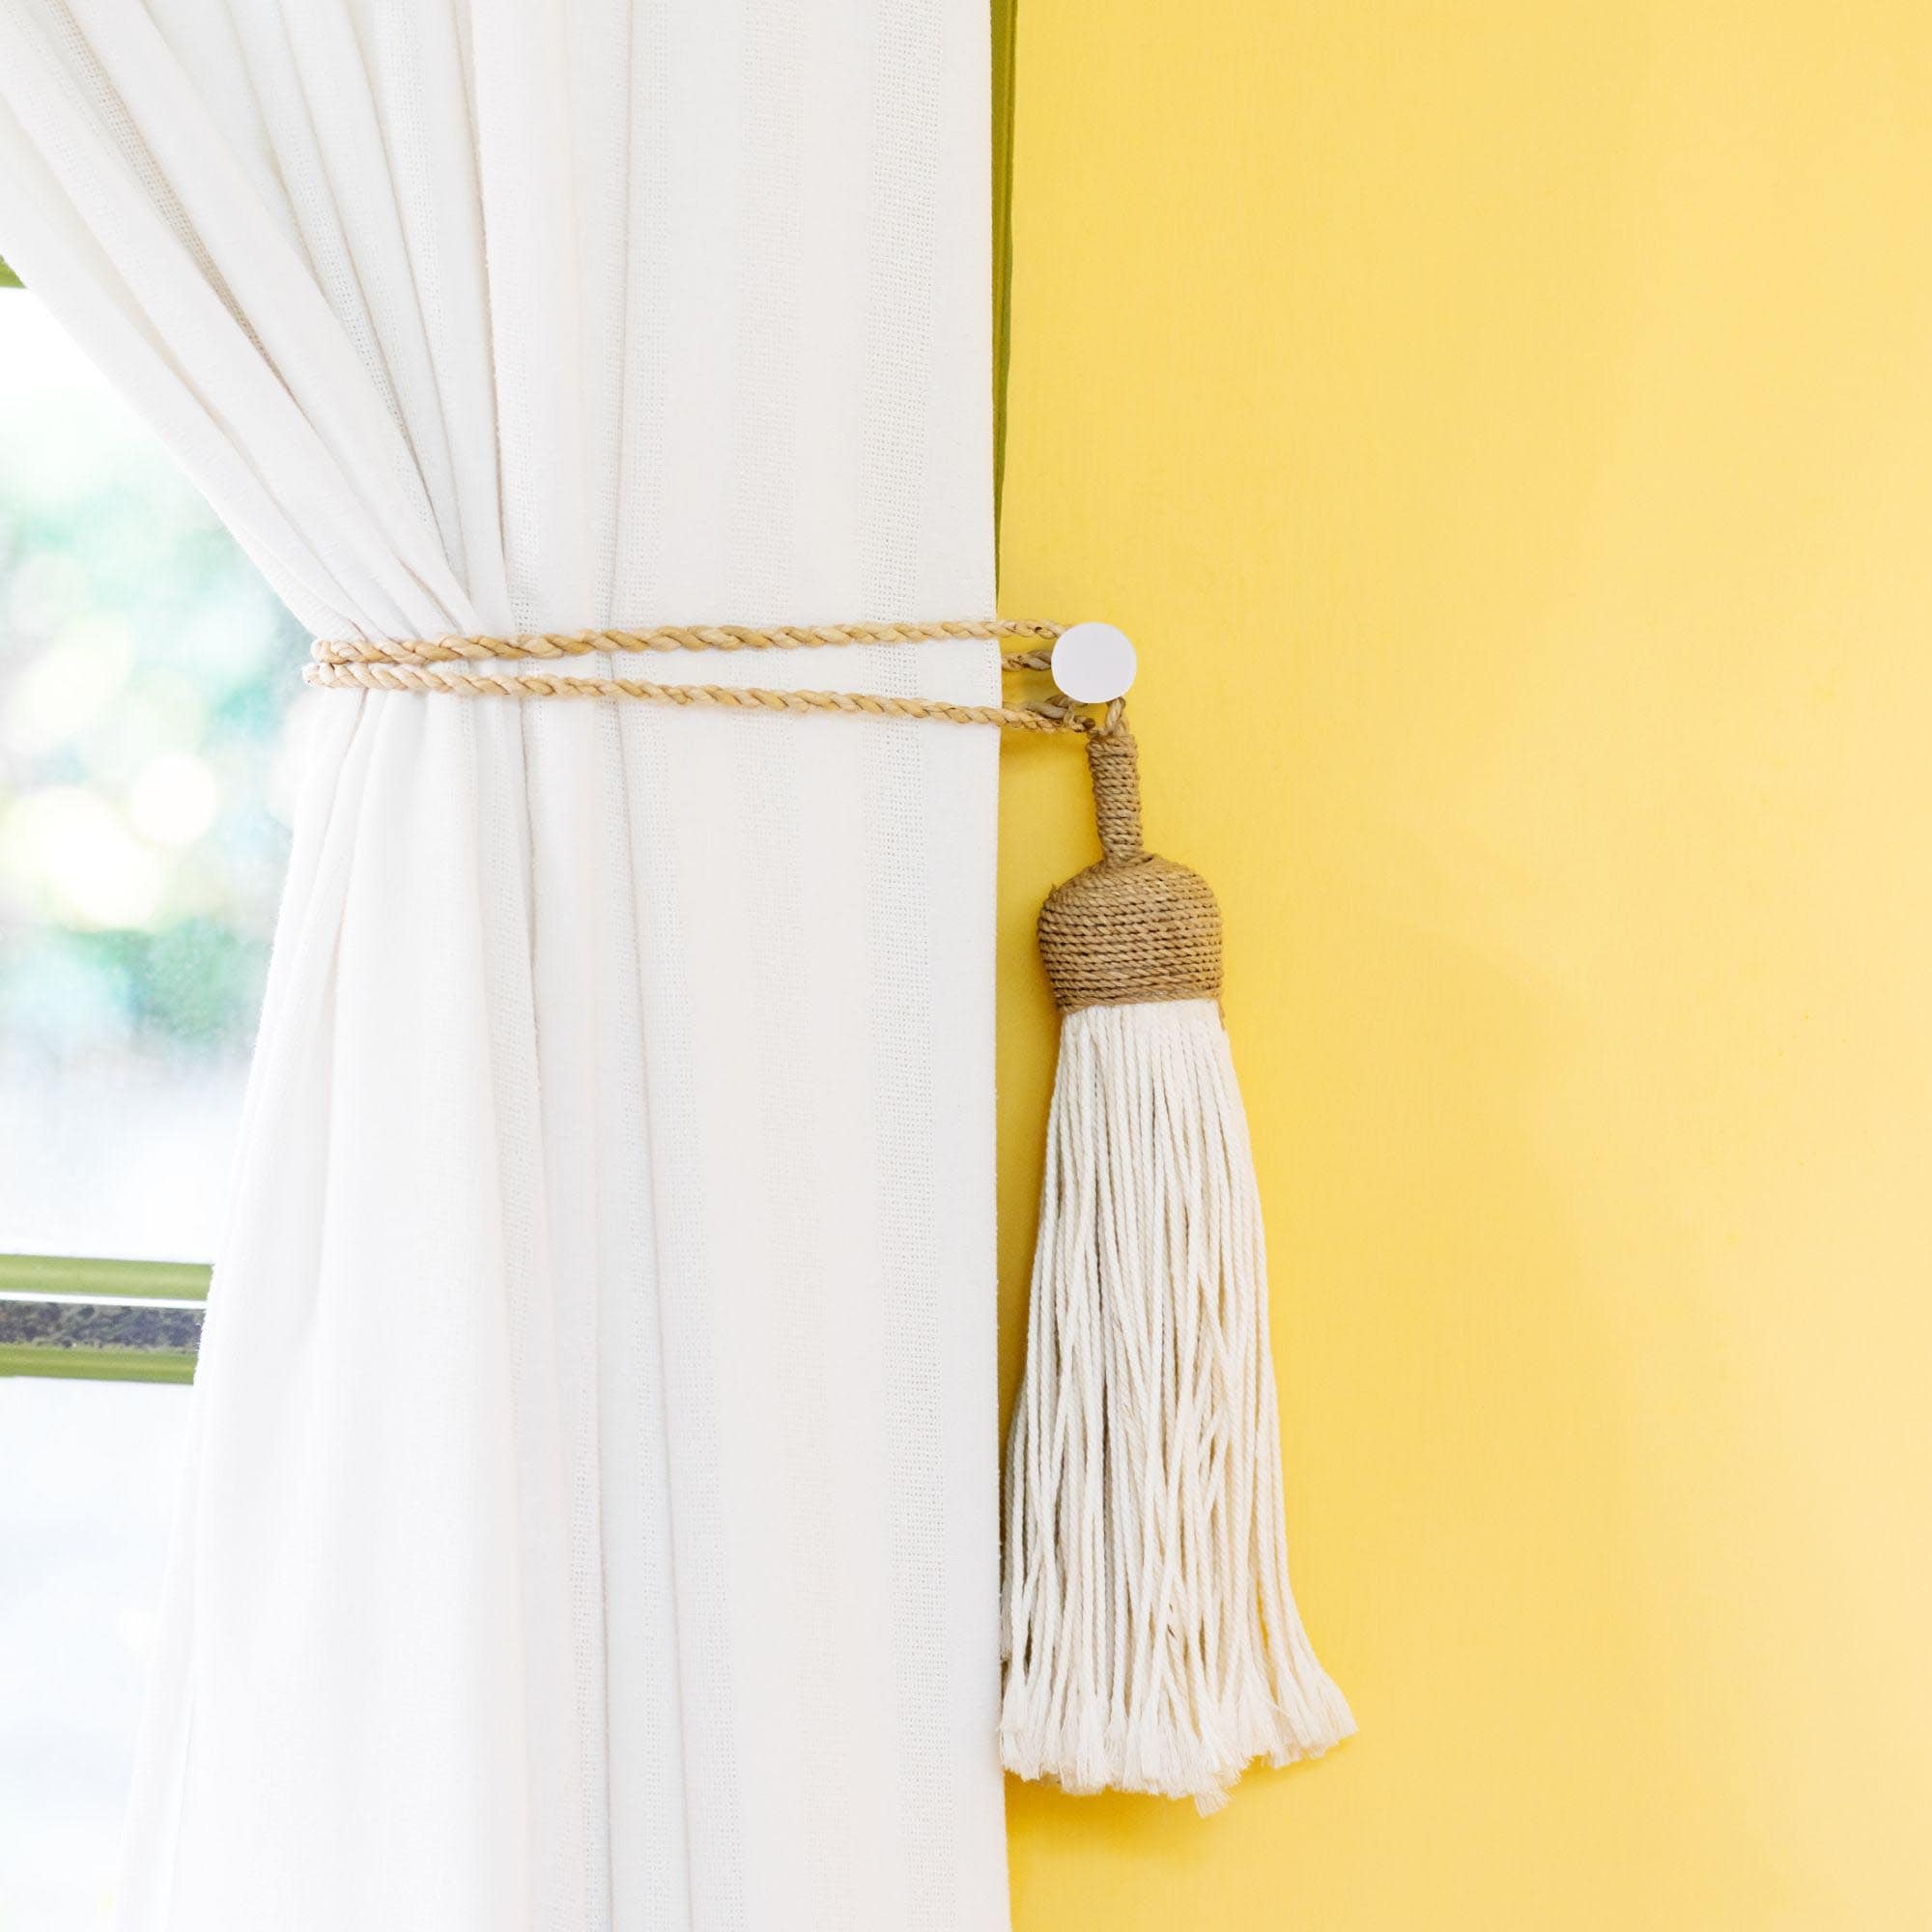 par de ganchos metálicos para colgar cortinas en blanco brillante con diseño redondo